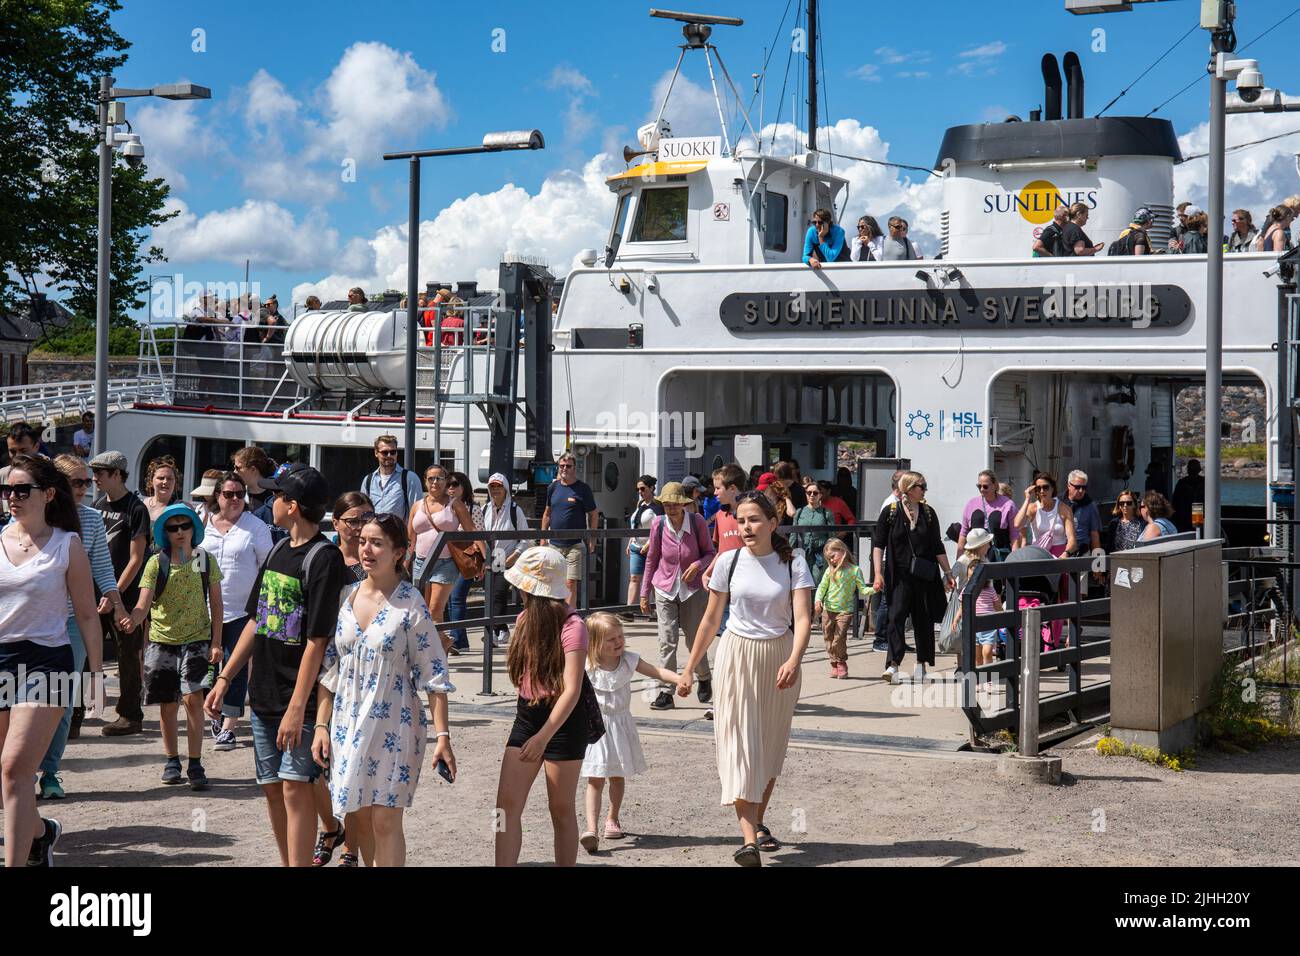 Le persone che escono da Suokki ferry per una gita di un giorno a Suomenlinna, una fortezza marina abitata di fronte a Helsinki, Finlandia Foto Stock